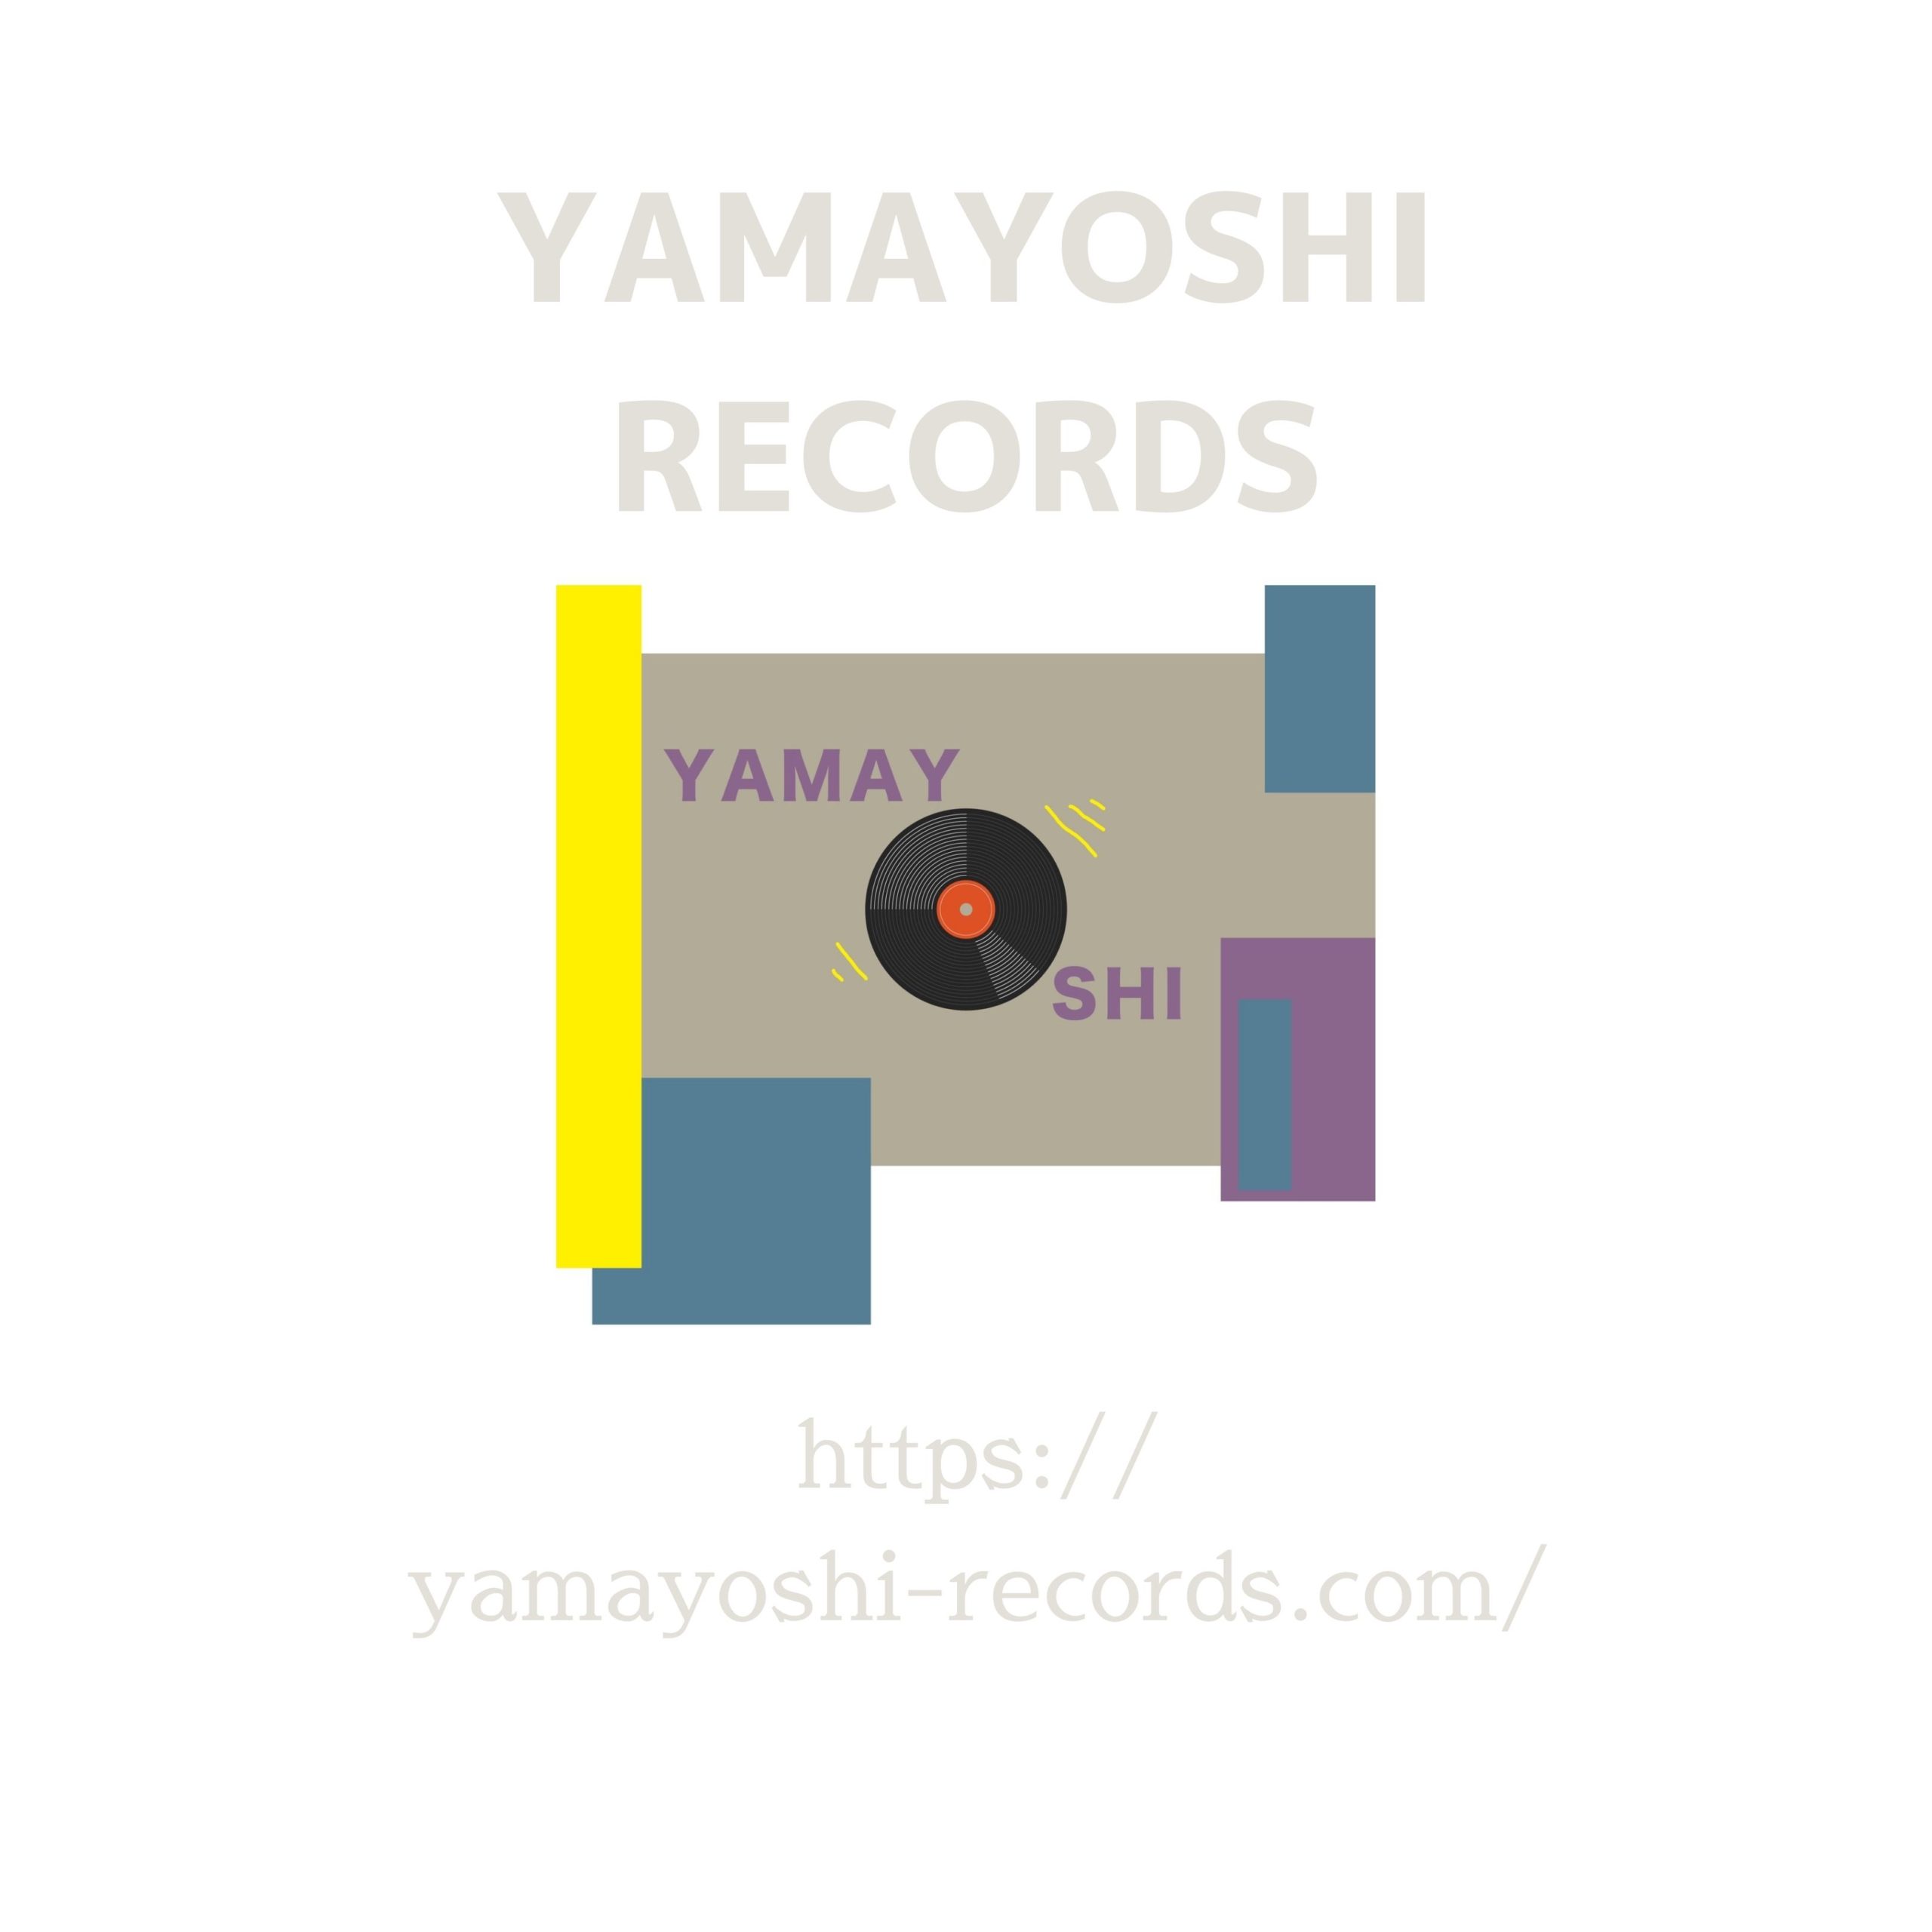 YAMAYOSHI RECORDS